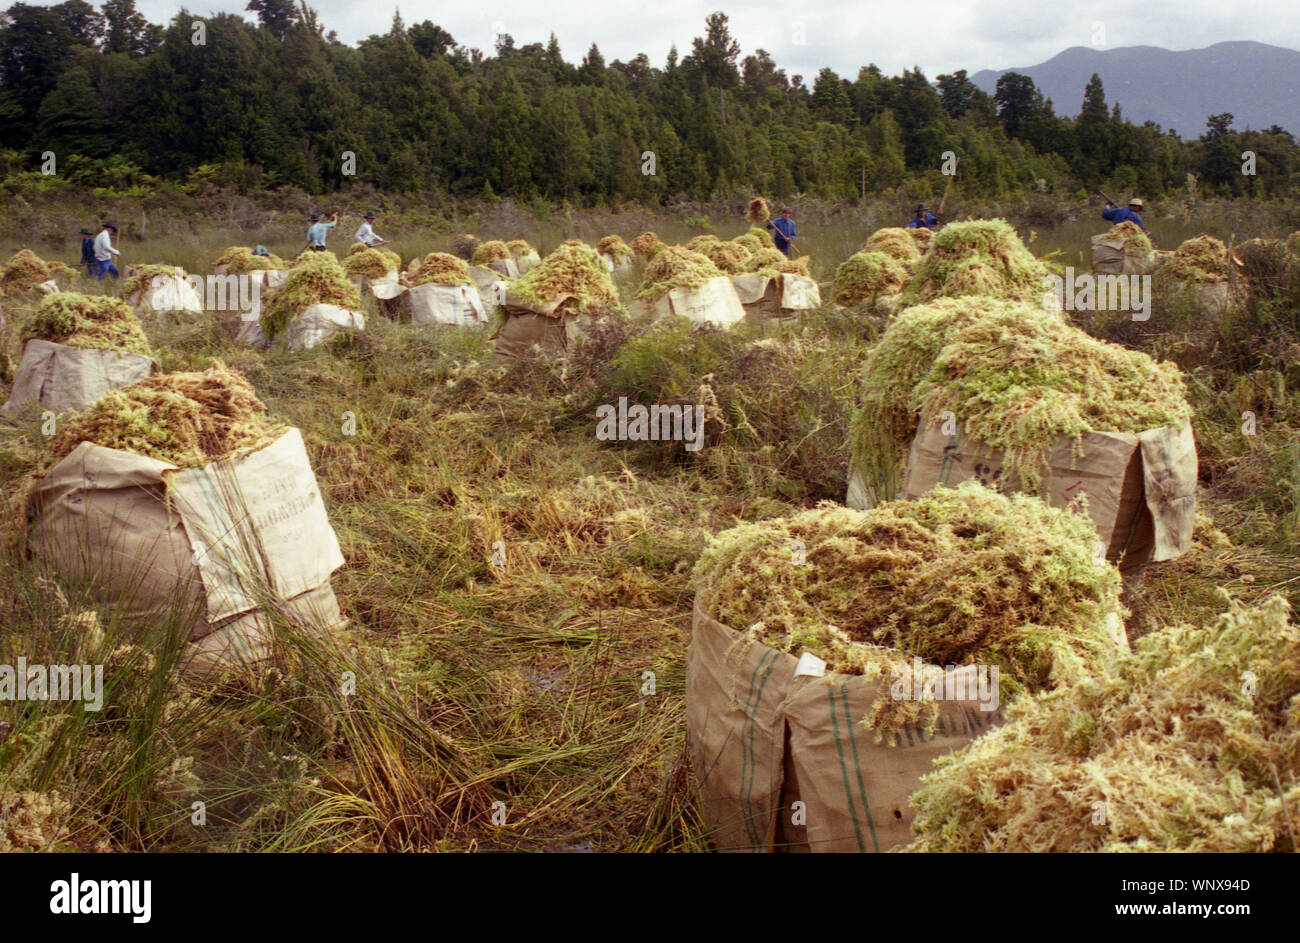 Sacs de sphaigne Mousse lors d'une opération de récolte, de la côte ouest, l'île du Sud, Nouvelle-Zélande. circa 1996. La récolte de la mousse n'utilise pas de grosses machines et est tout à fait durable, avec dans la repousse des 3 - 5 ans. Banque D'Images